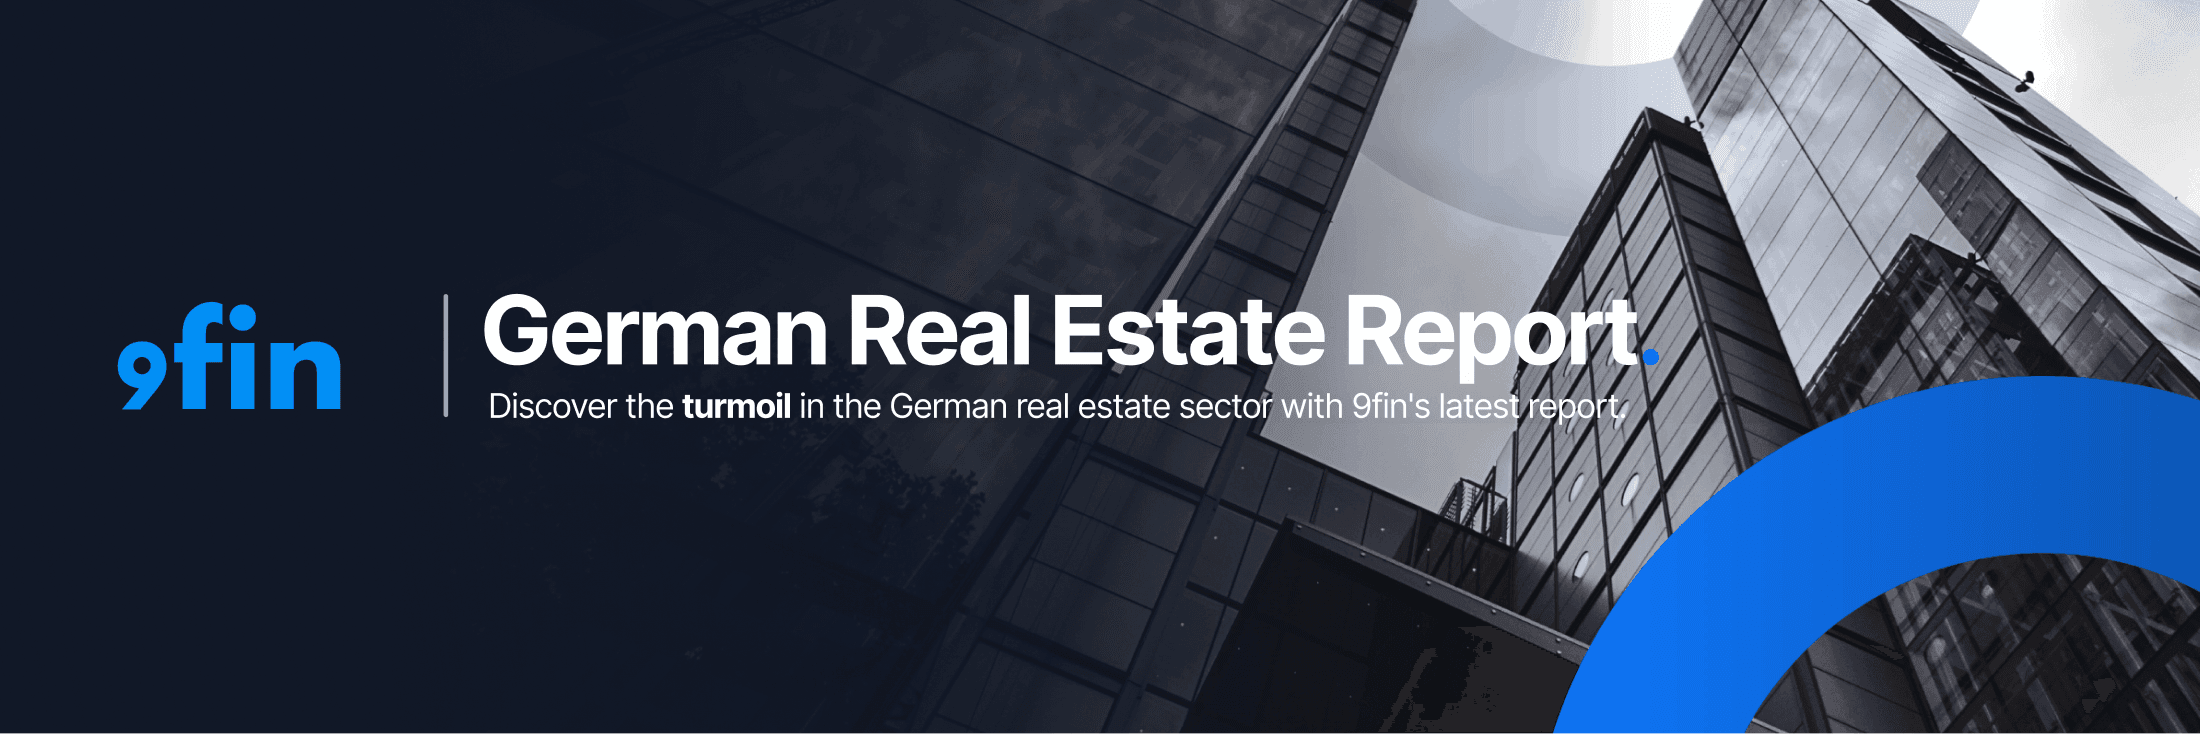 9fin's German Real Estate Report